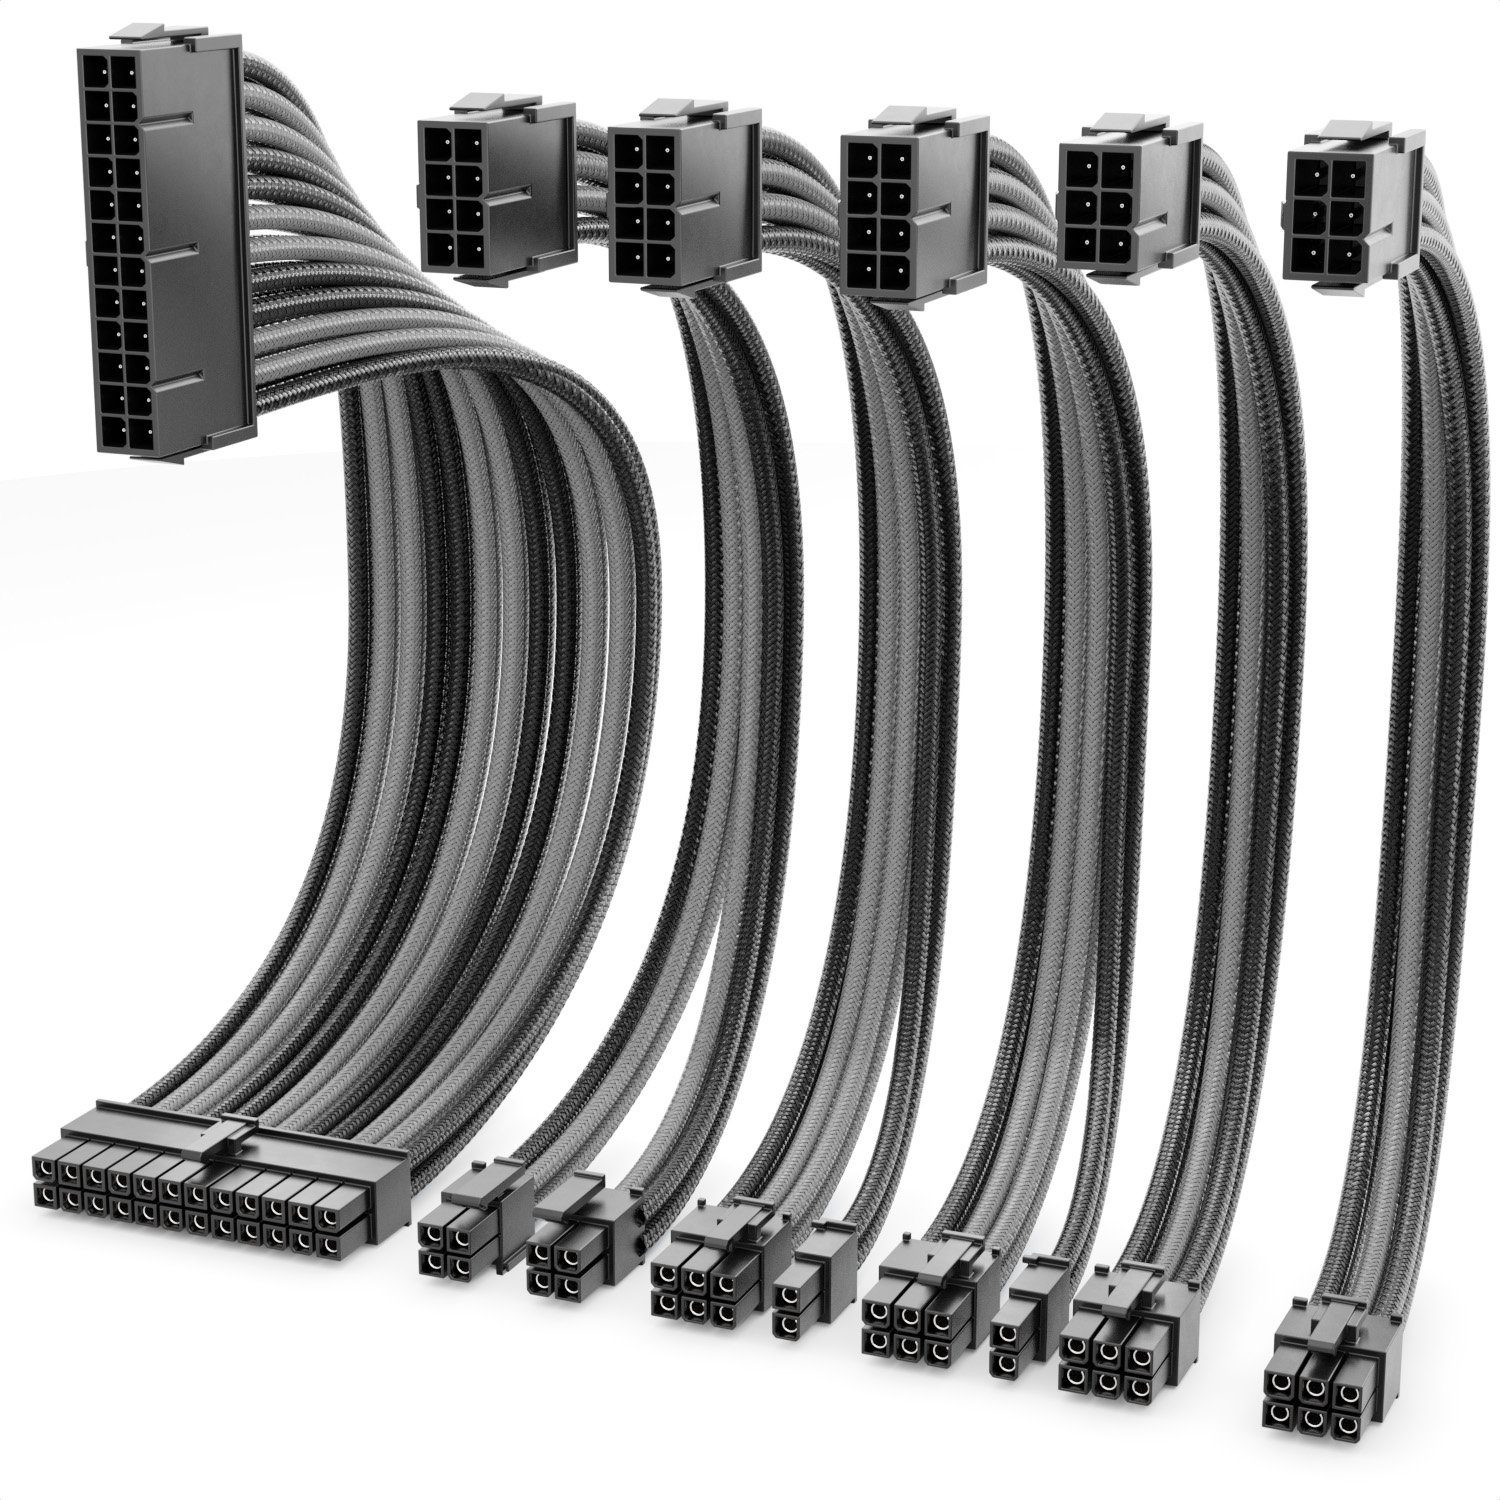 deleyCON deleyCON Netzteil Kabel Set 6-Teilig 30cm Computer Motherboard 18 AWG Computer-Kabel